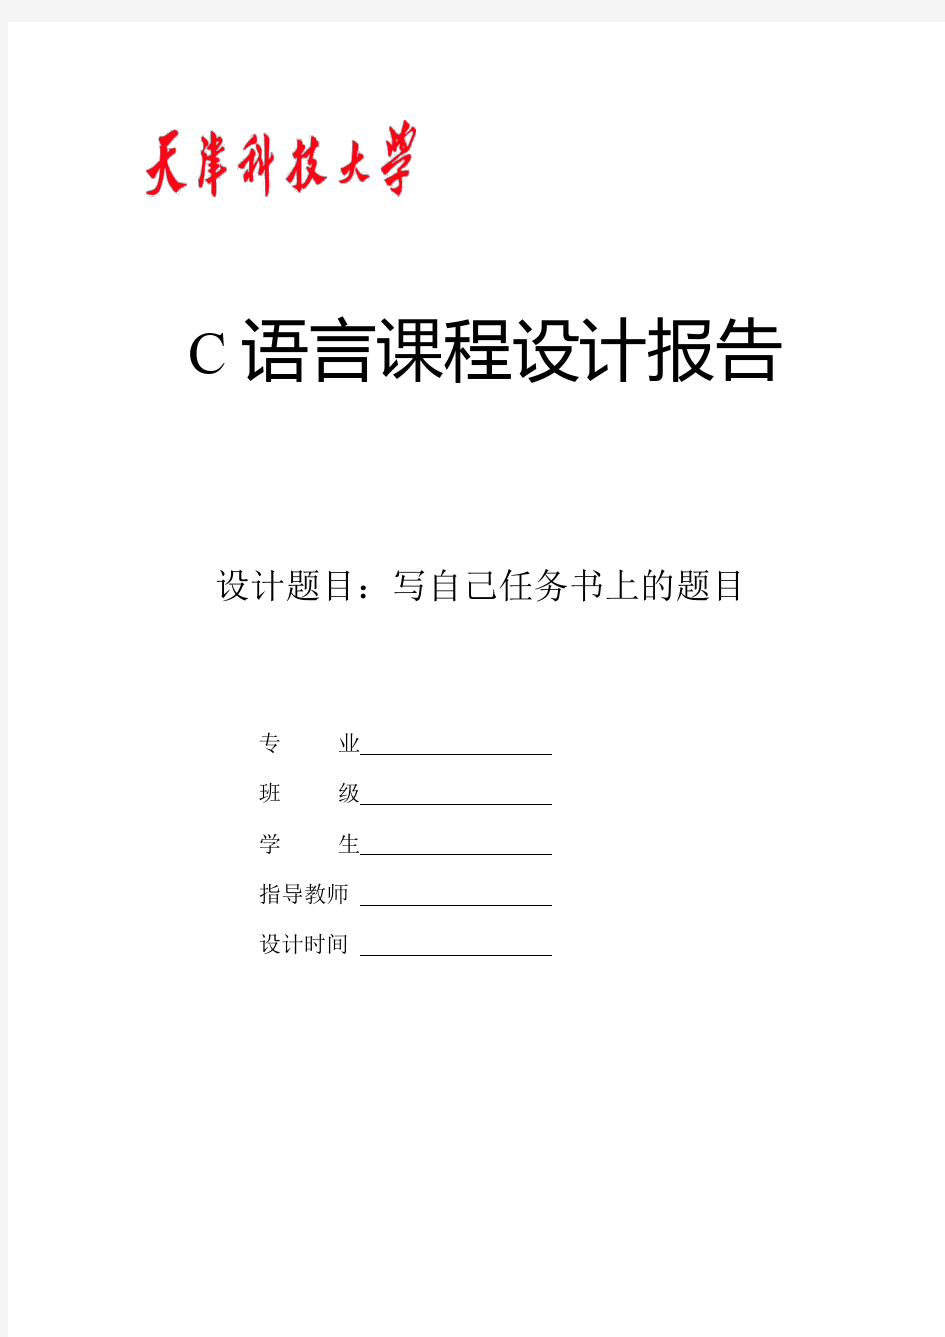 C语言通讯录设计报告